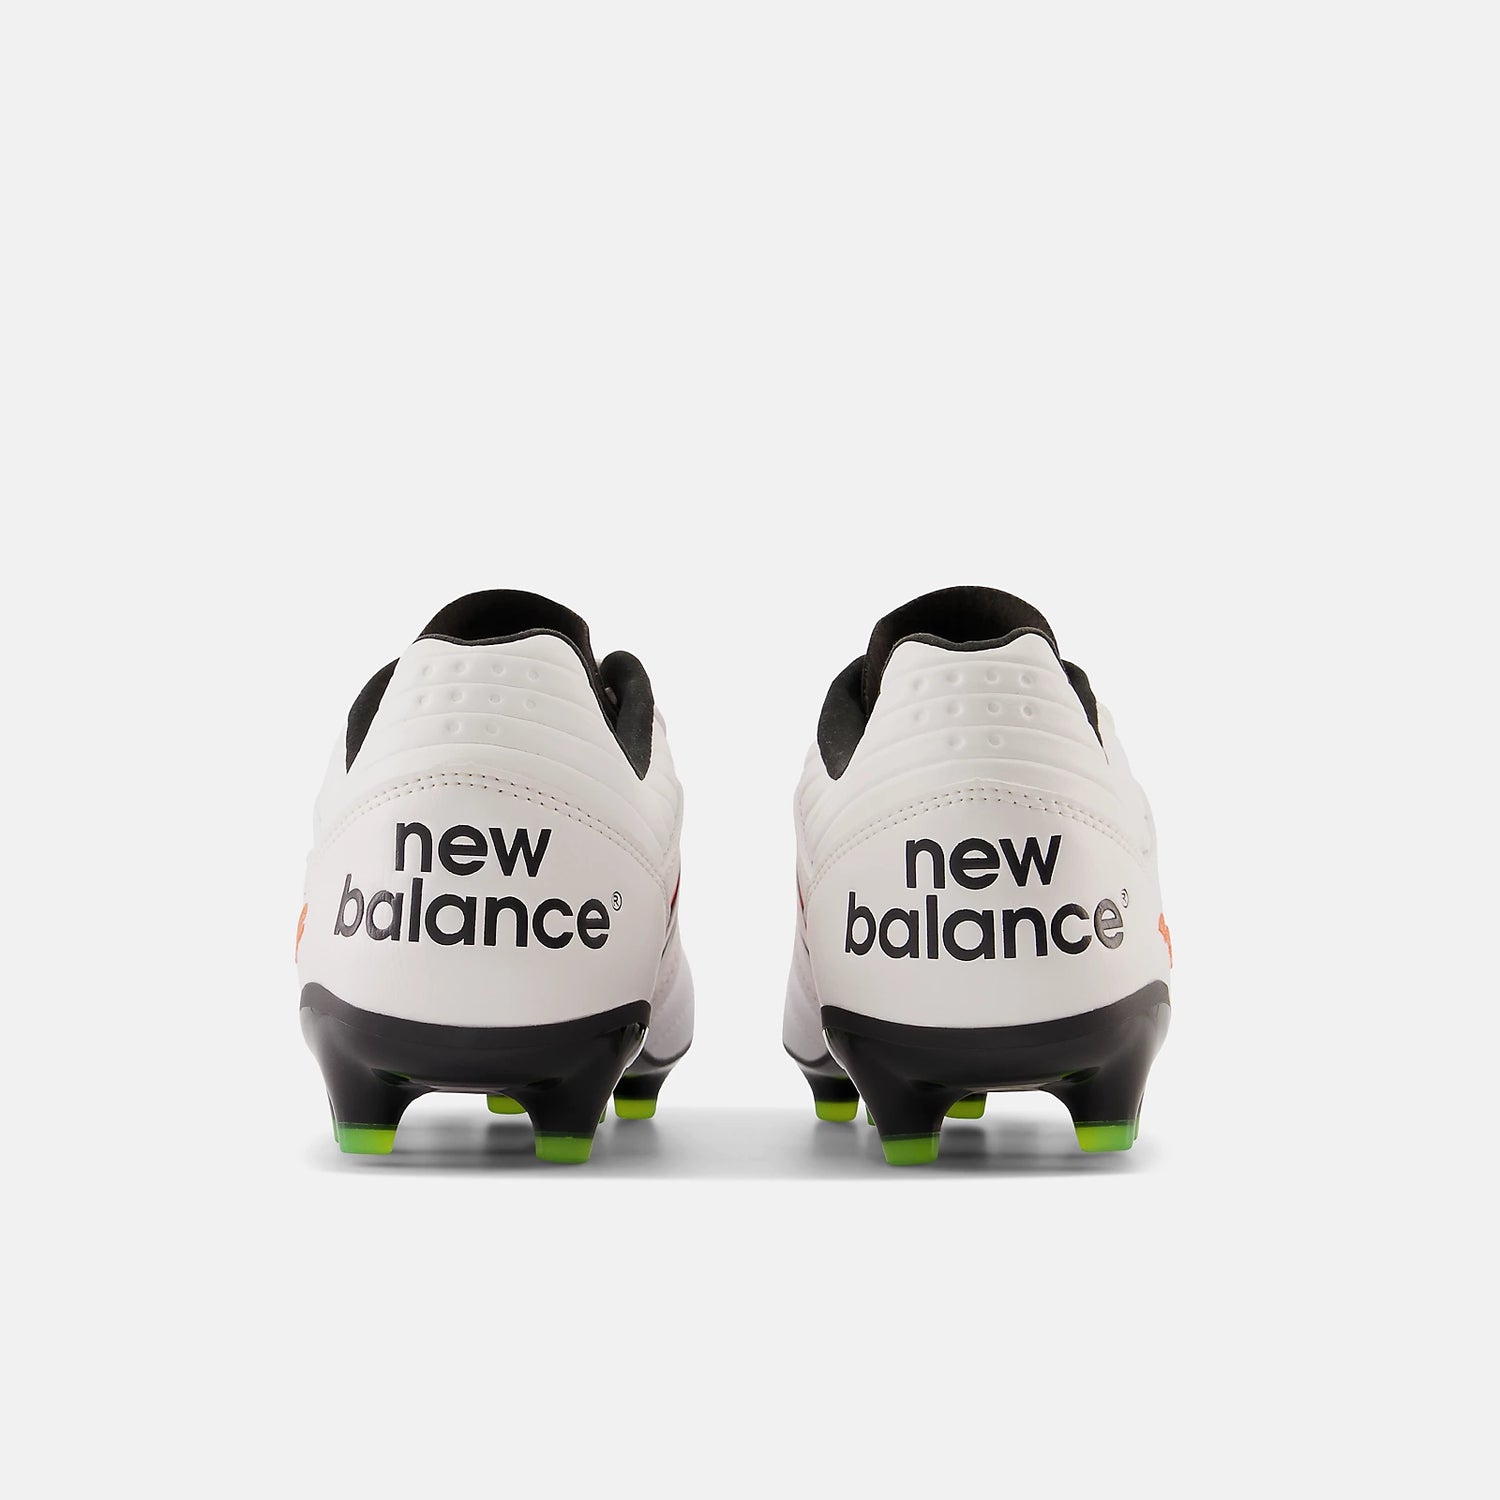 New Balance 442 v2 Pro FG - White/Neon Dragonfly